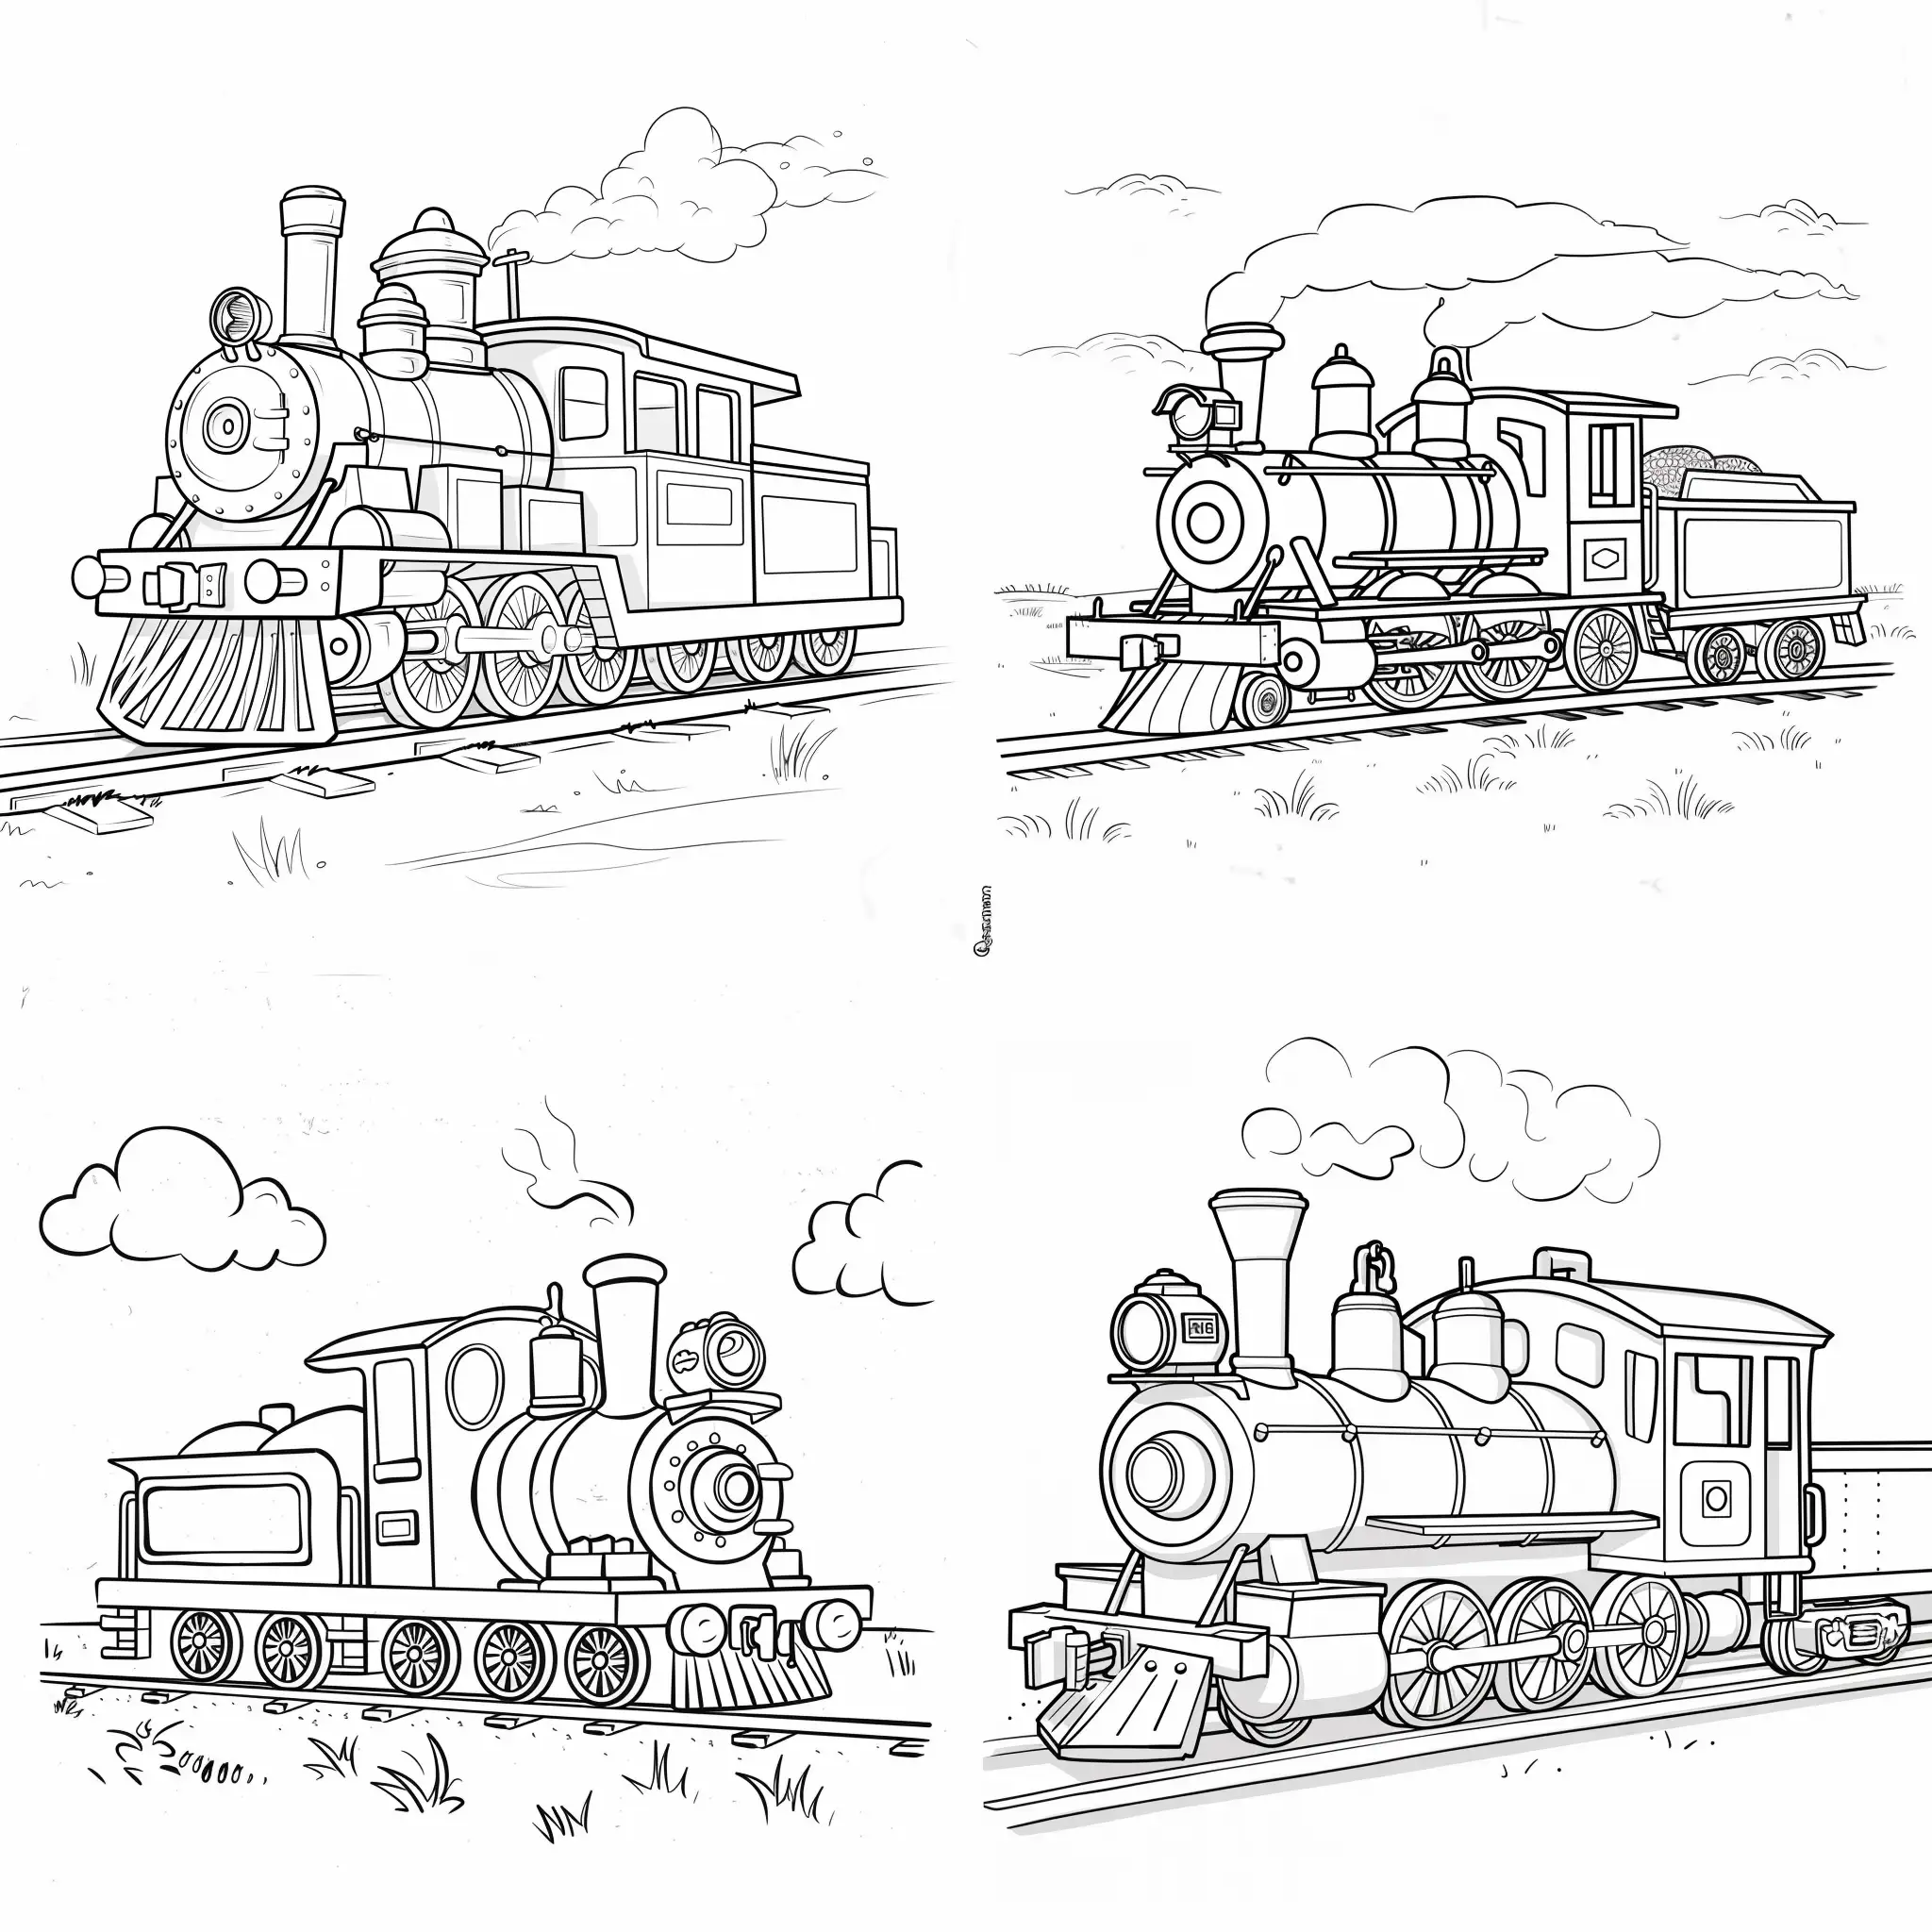 Dibuja  un tren que sea  lindo y sencillo para libro de colorear de niños pequeños, sin escalas de grises en una hoja blanca con fondo liso sin dibujos. El tren debe ser de aspecto agradable y amigable.